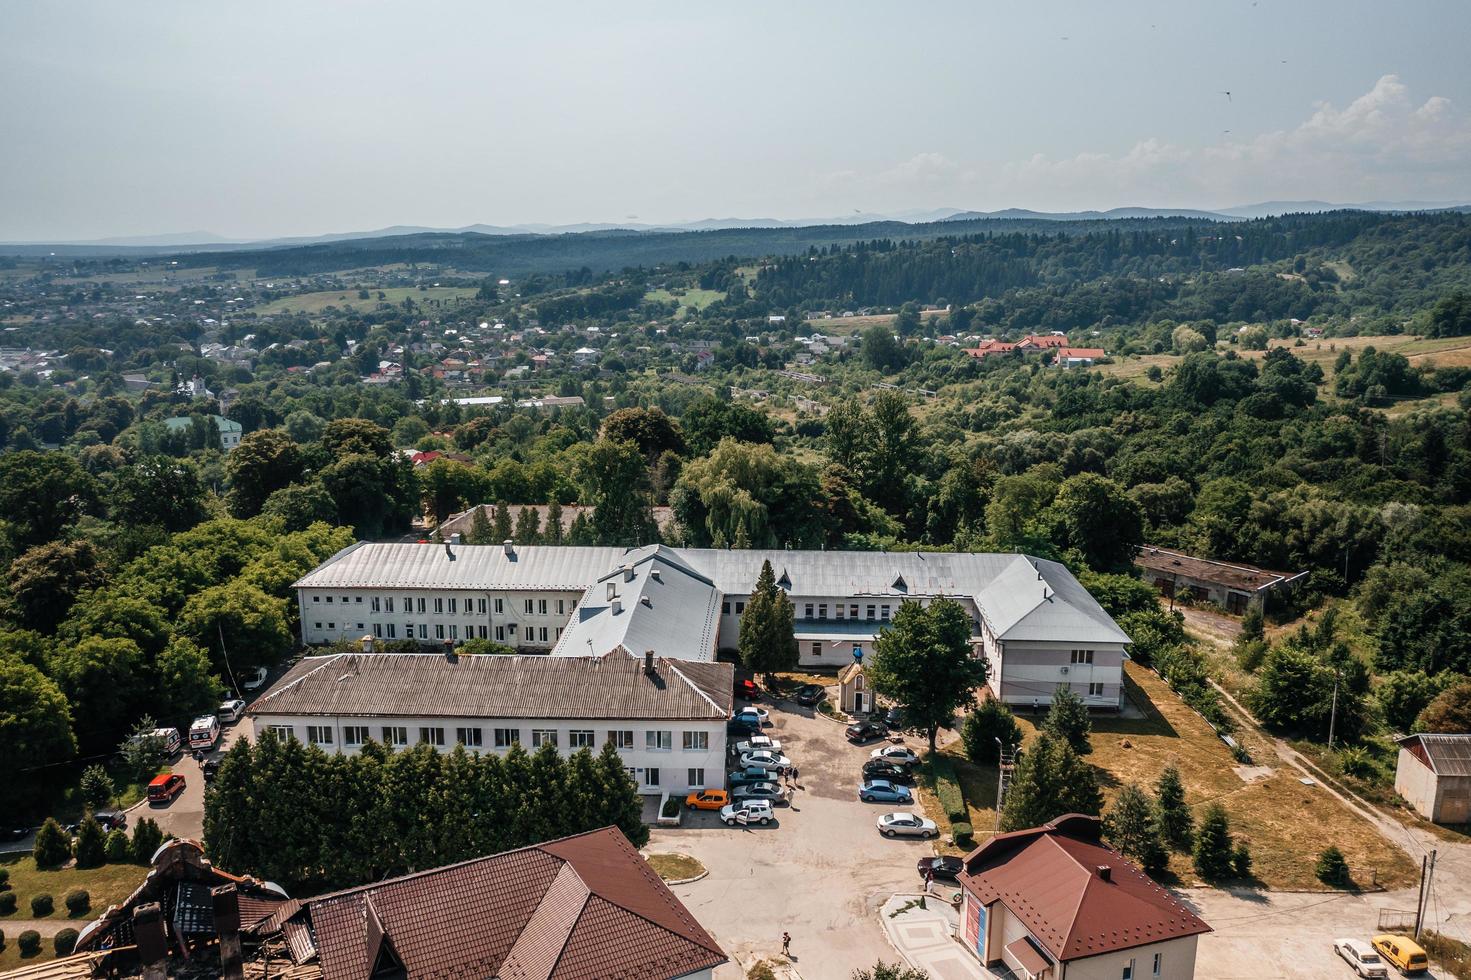 dolyna city, ukraine 13 juillet 2021 hôpital central de la ville, vue de dessus, photo